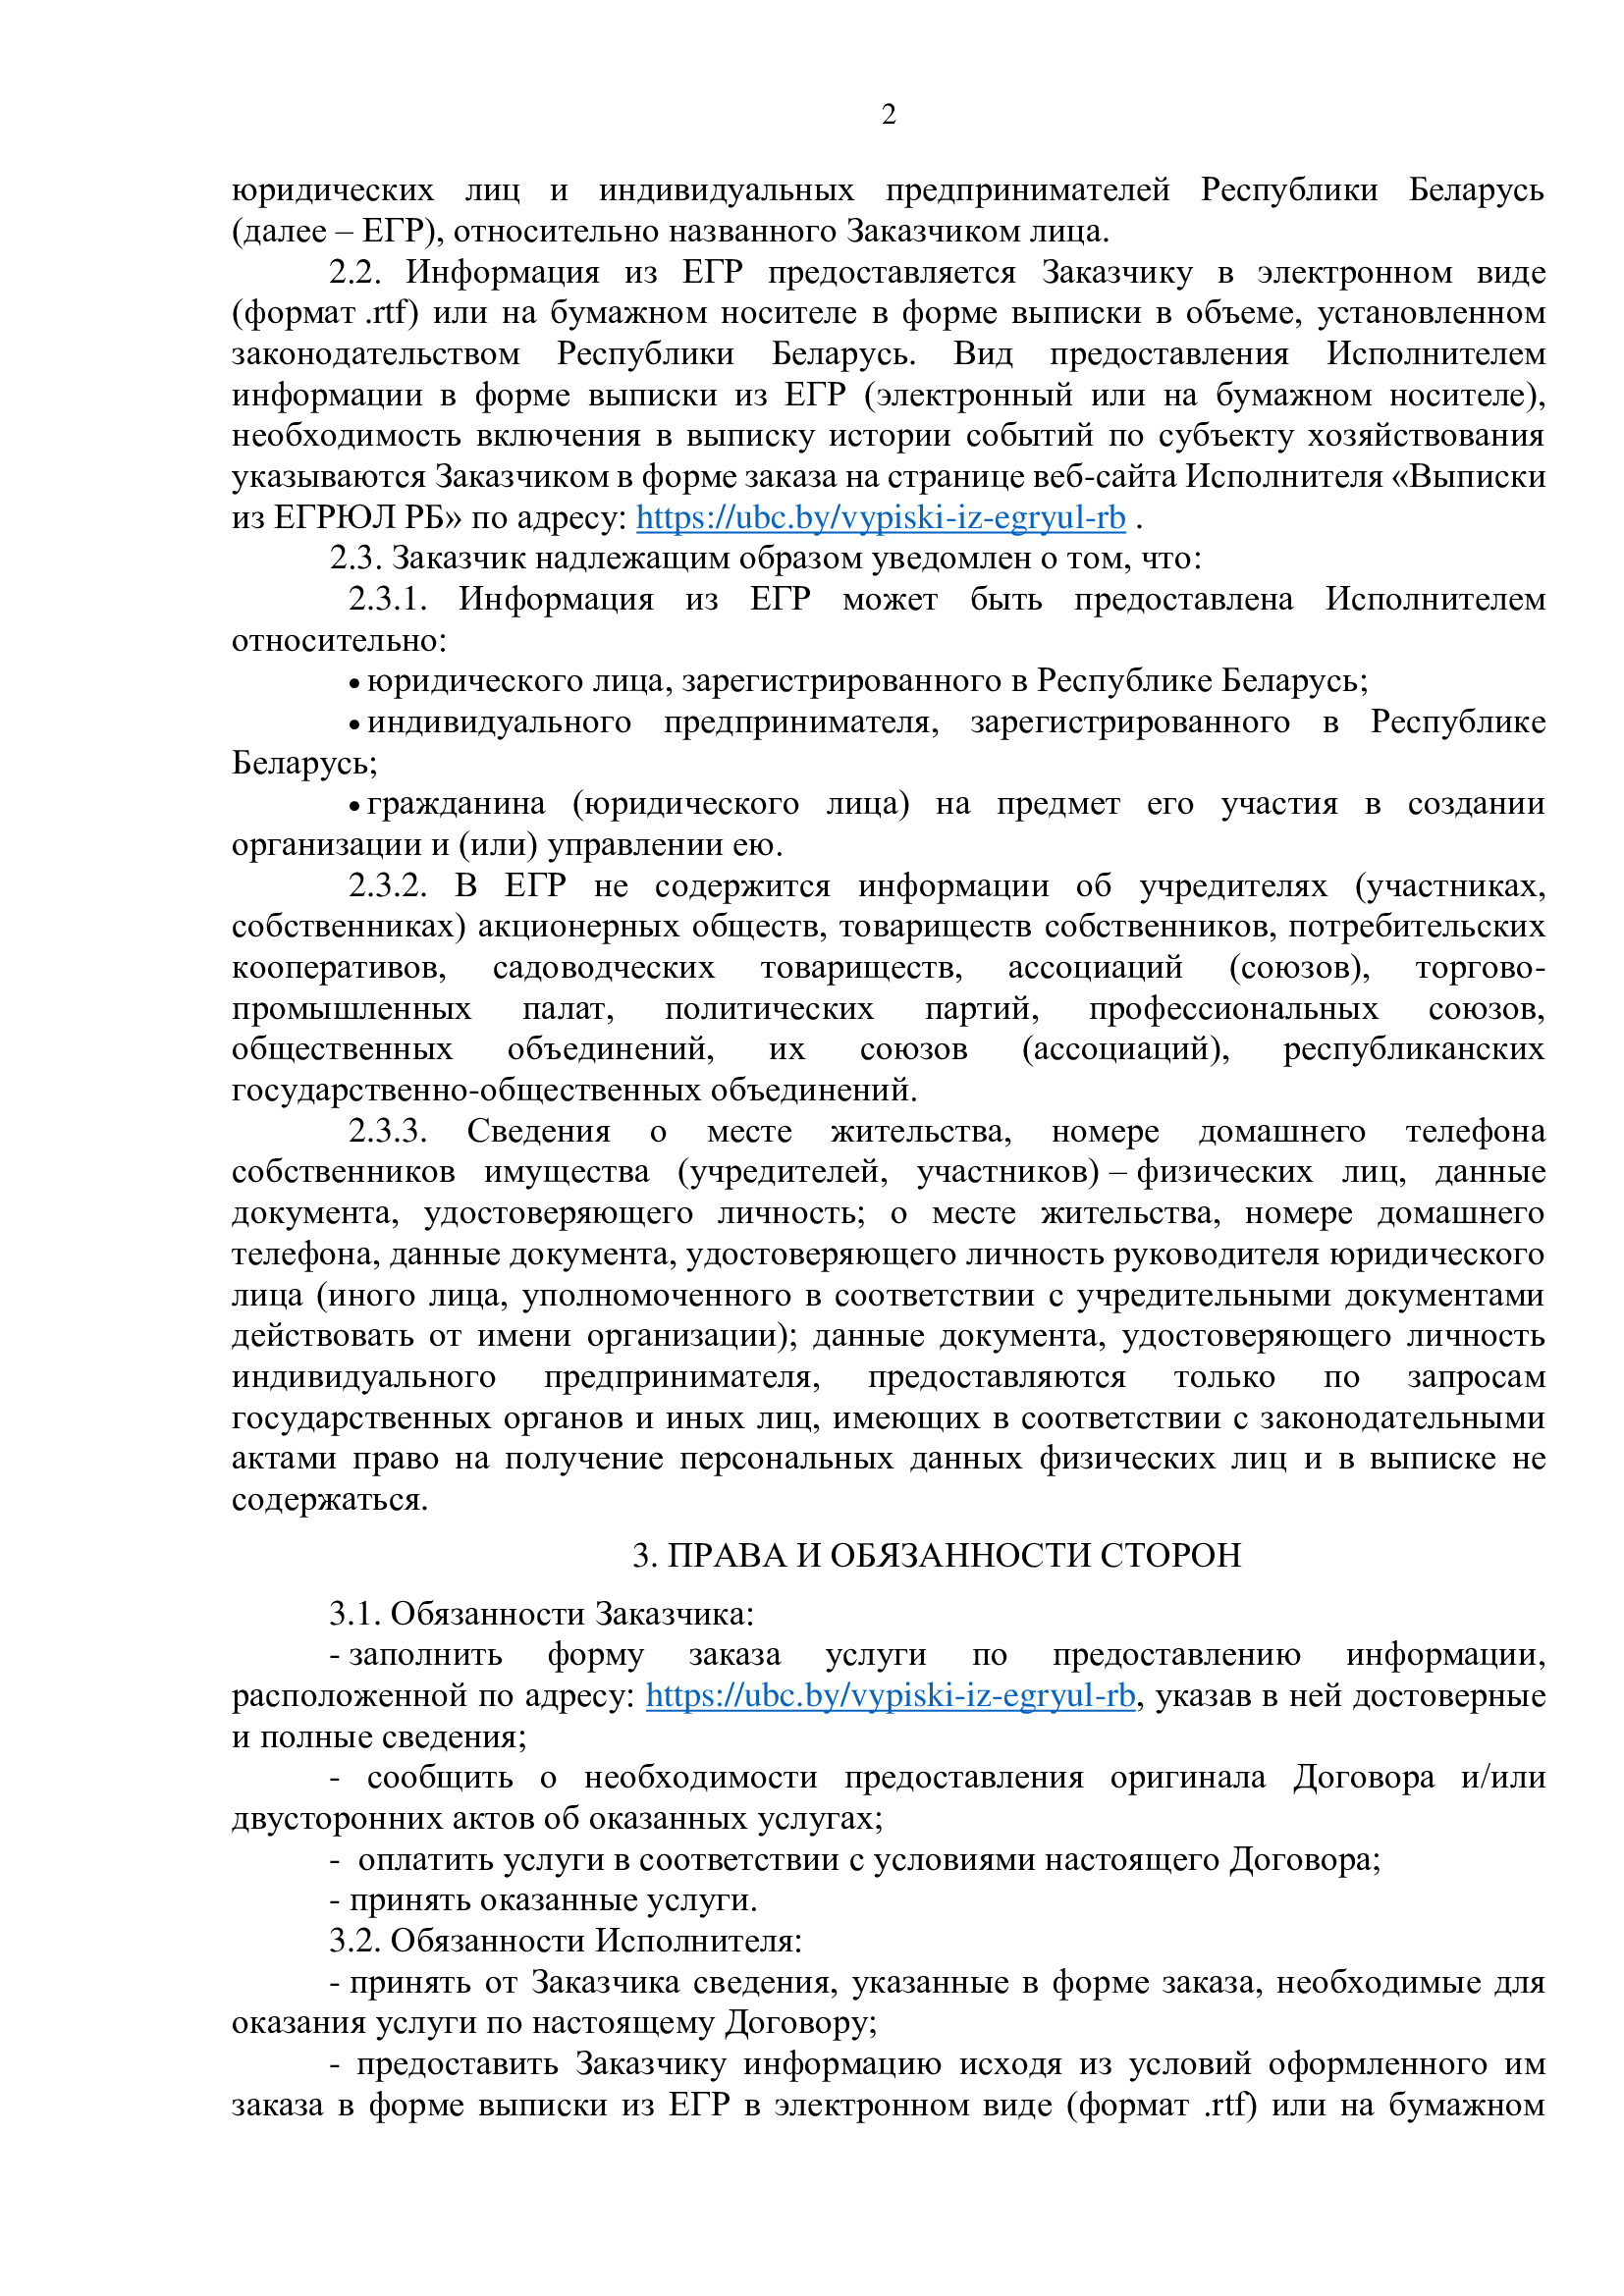 Публичный договор на заказ выписки из ЕГРЮЛ РБ 2